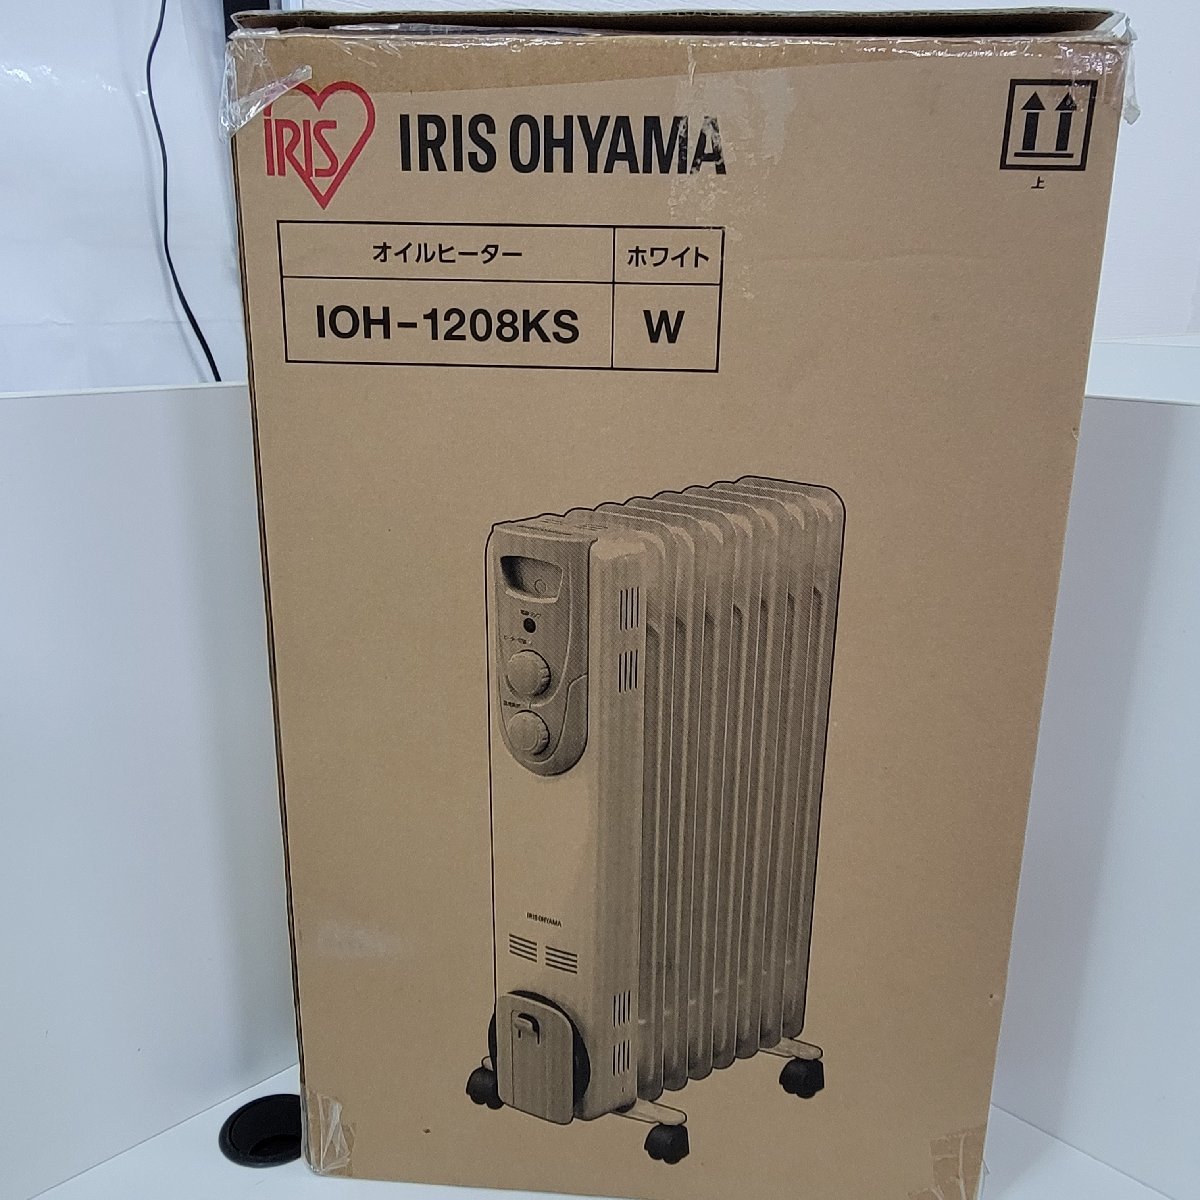  Iris o-yama oil heater IOH-1208 KS used boxed 